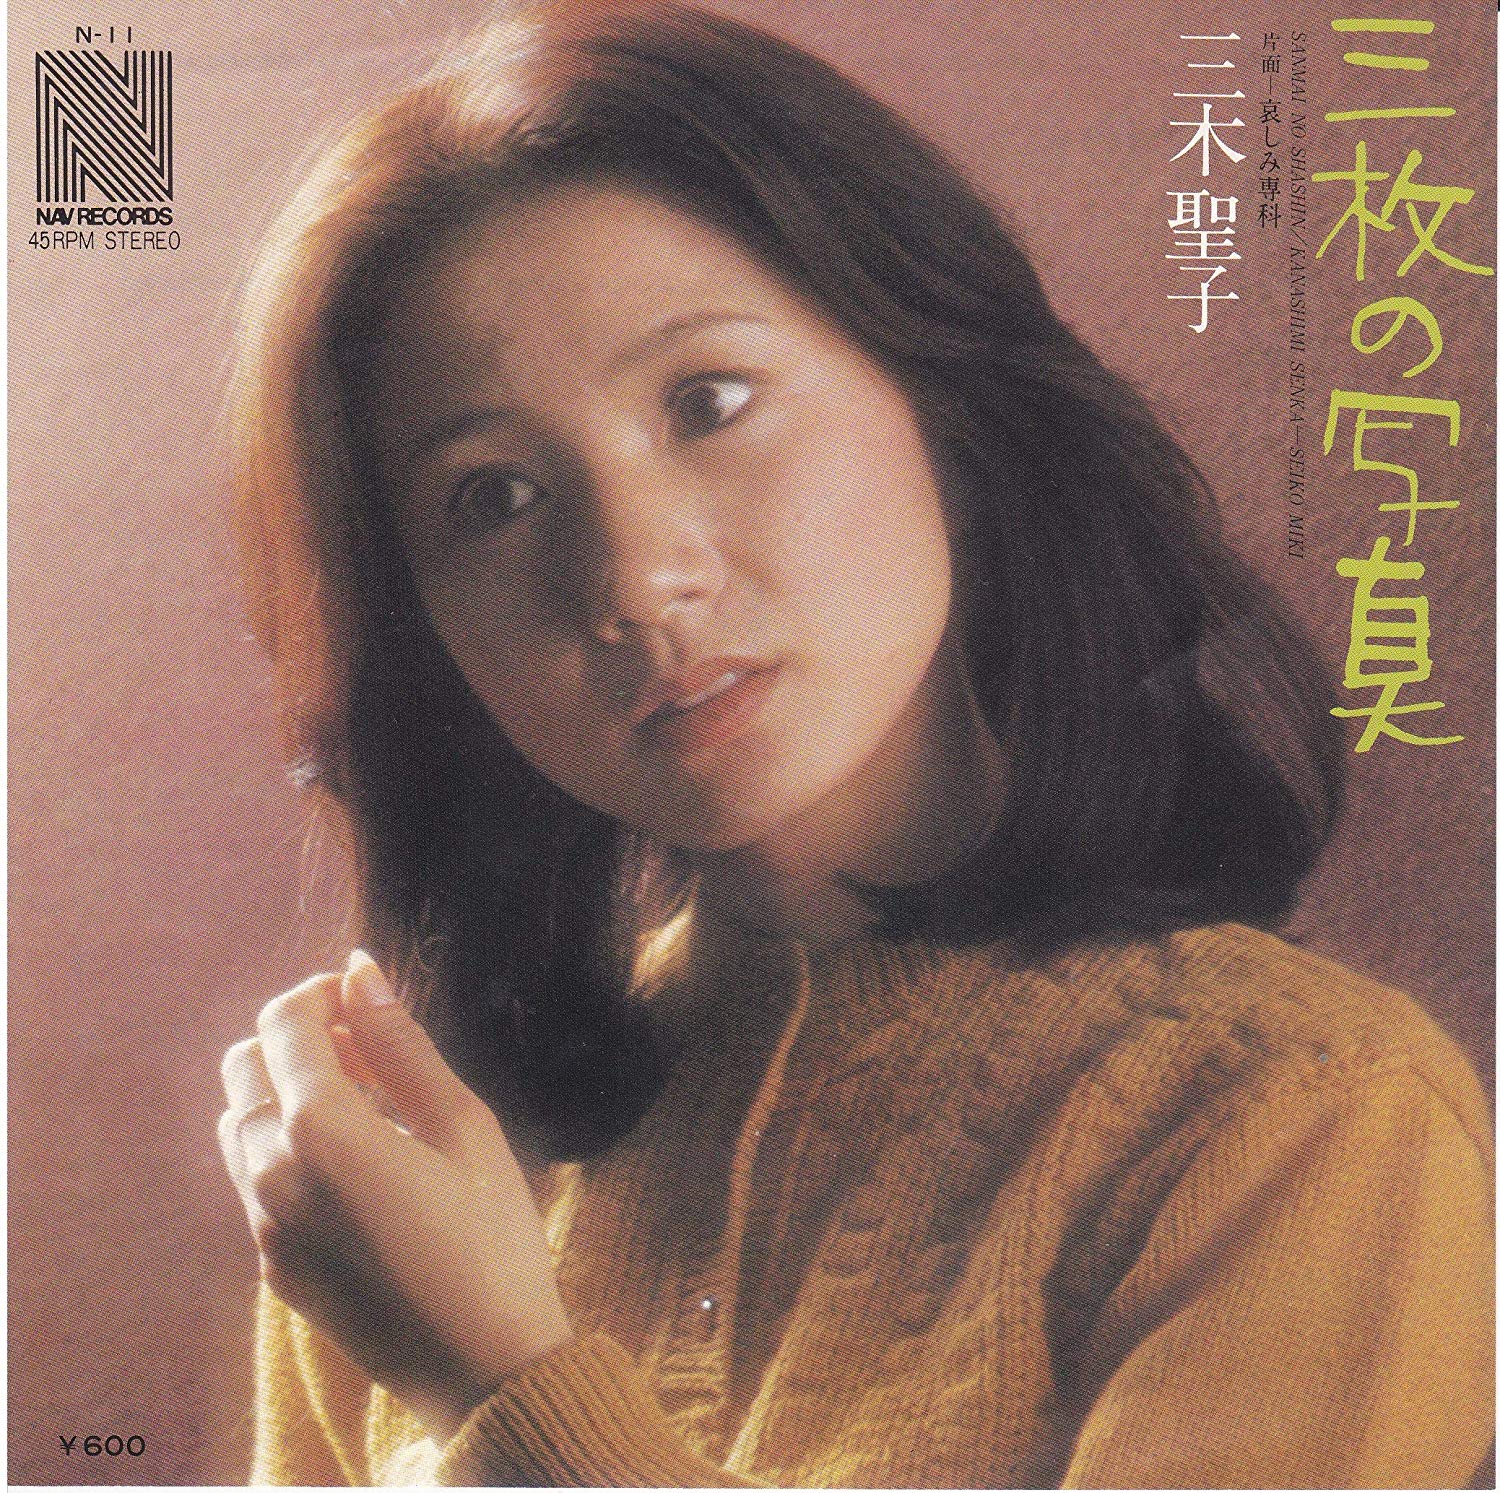 第17回 三木聖子 三枚の写真 1977年 Music Guide ミュージックガイド